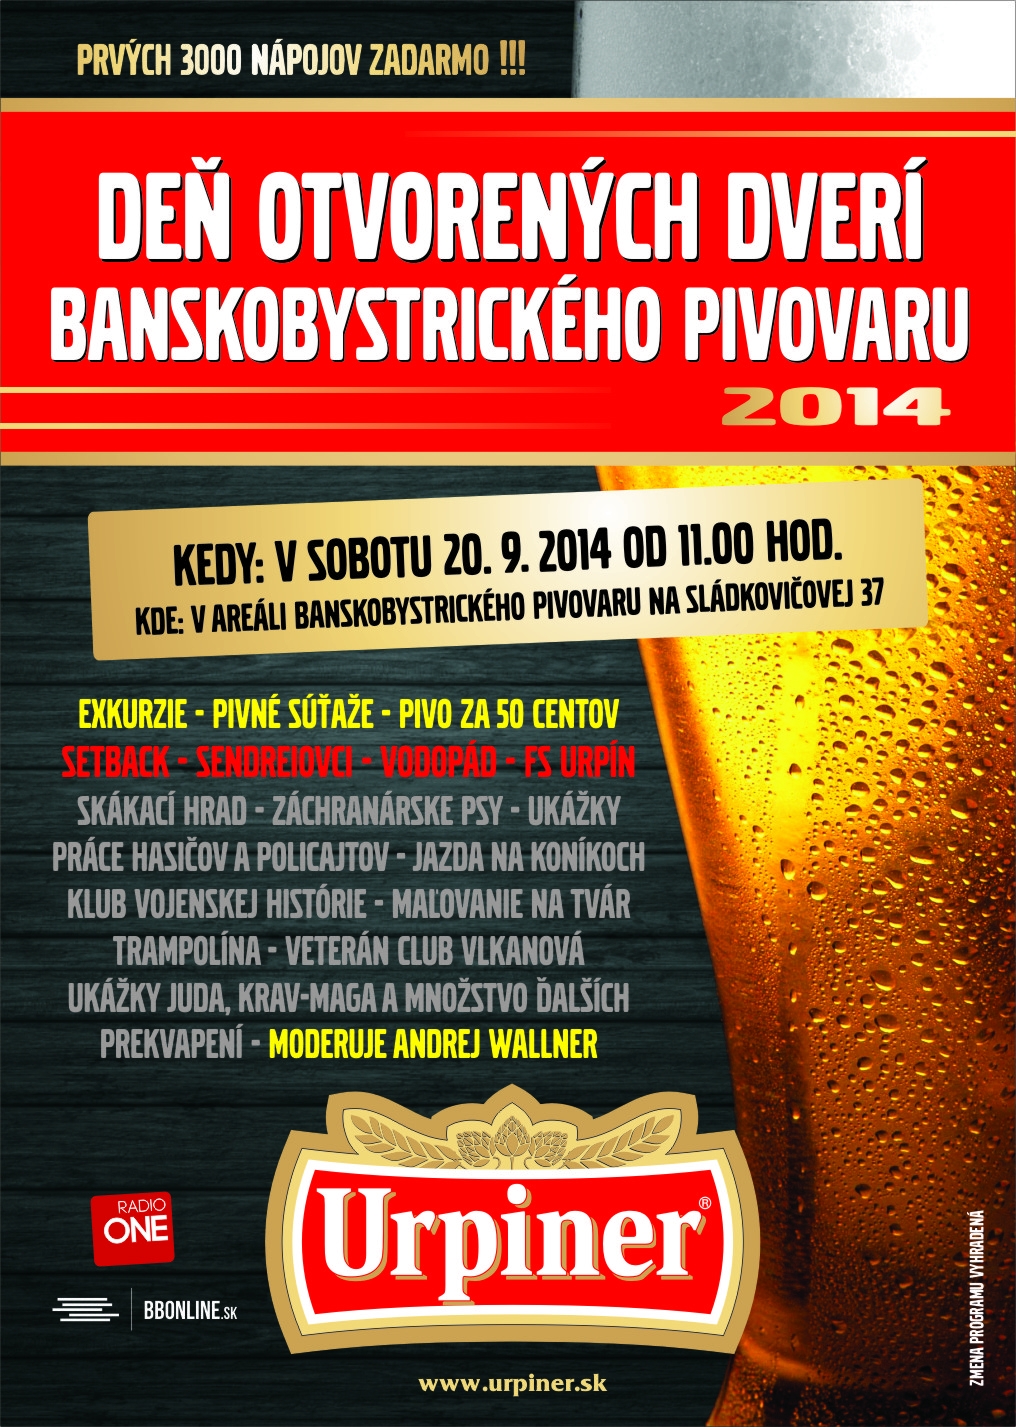 URPINER deň otvorených dverí  Banská Bystrica  2014  - 9. ročník